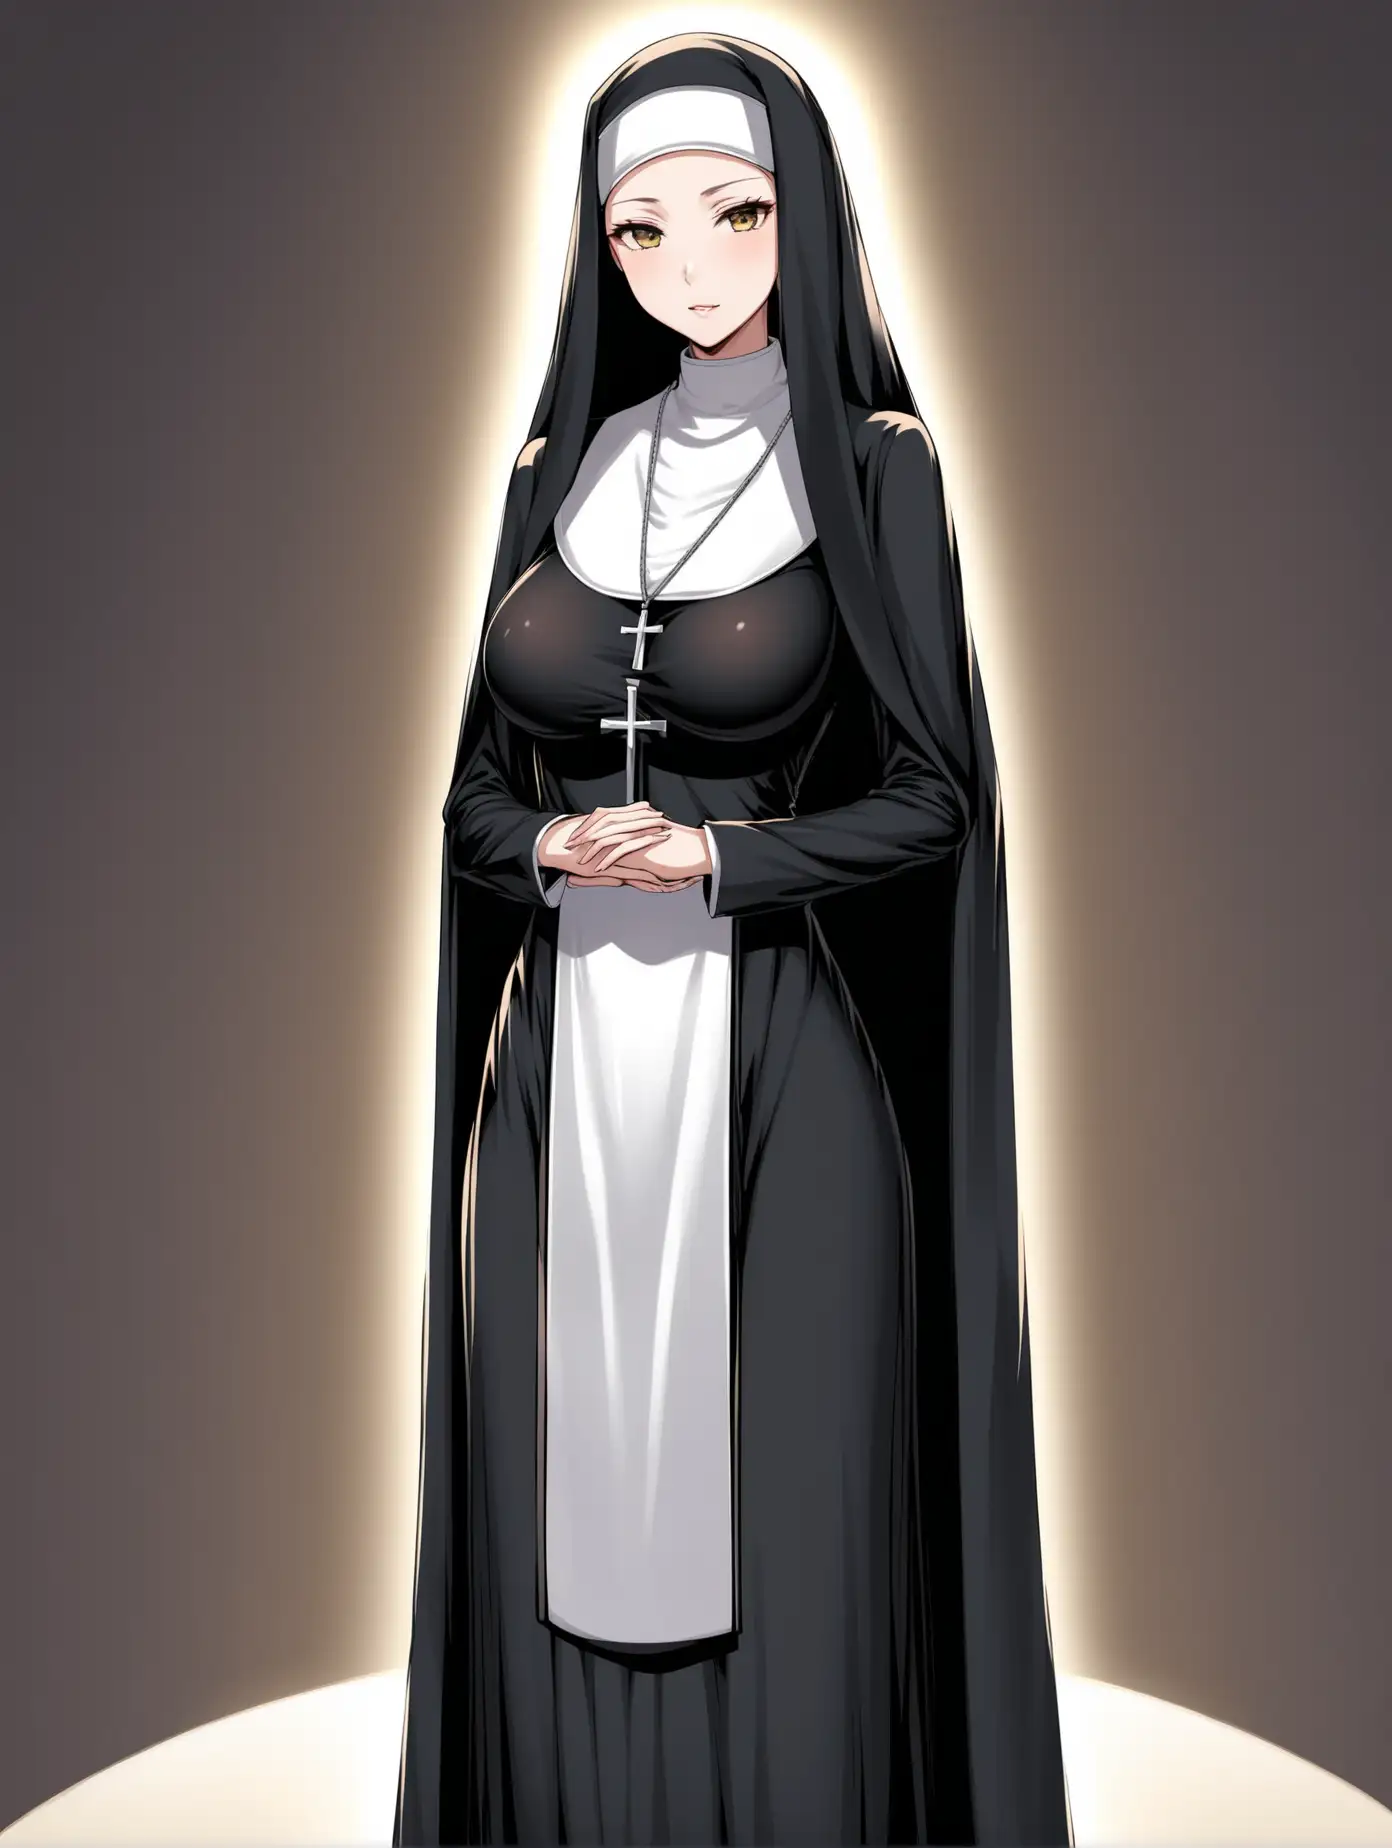 взрослая женщина, монашка, стоит во весь рост, стройная, худая, пышная грудь, сексуальная 